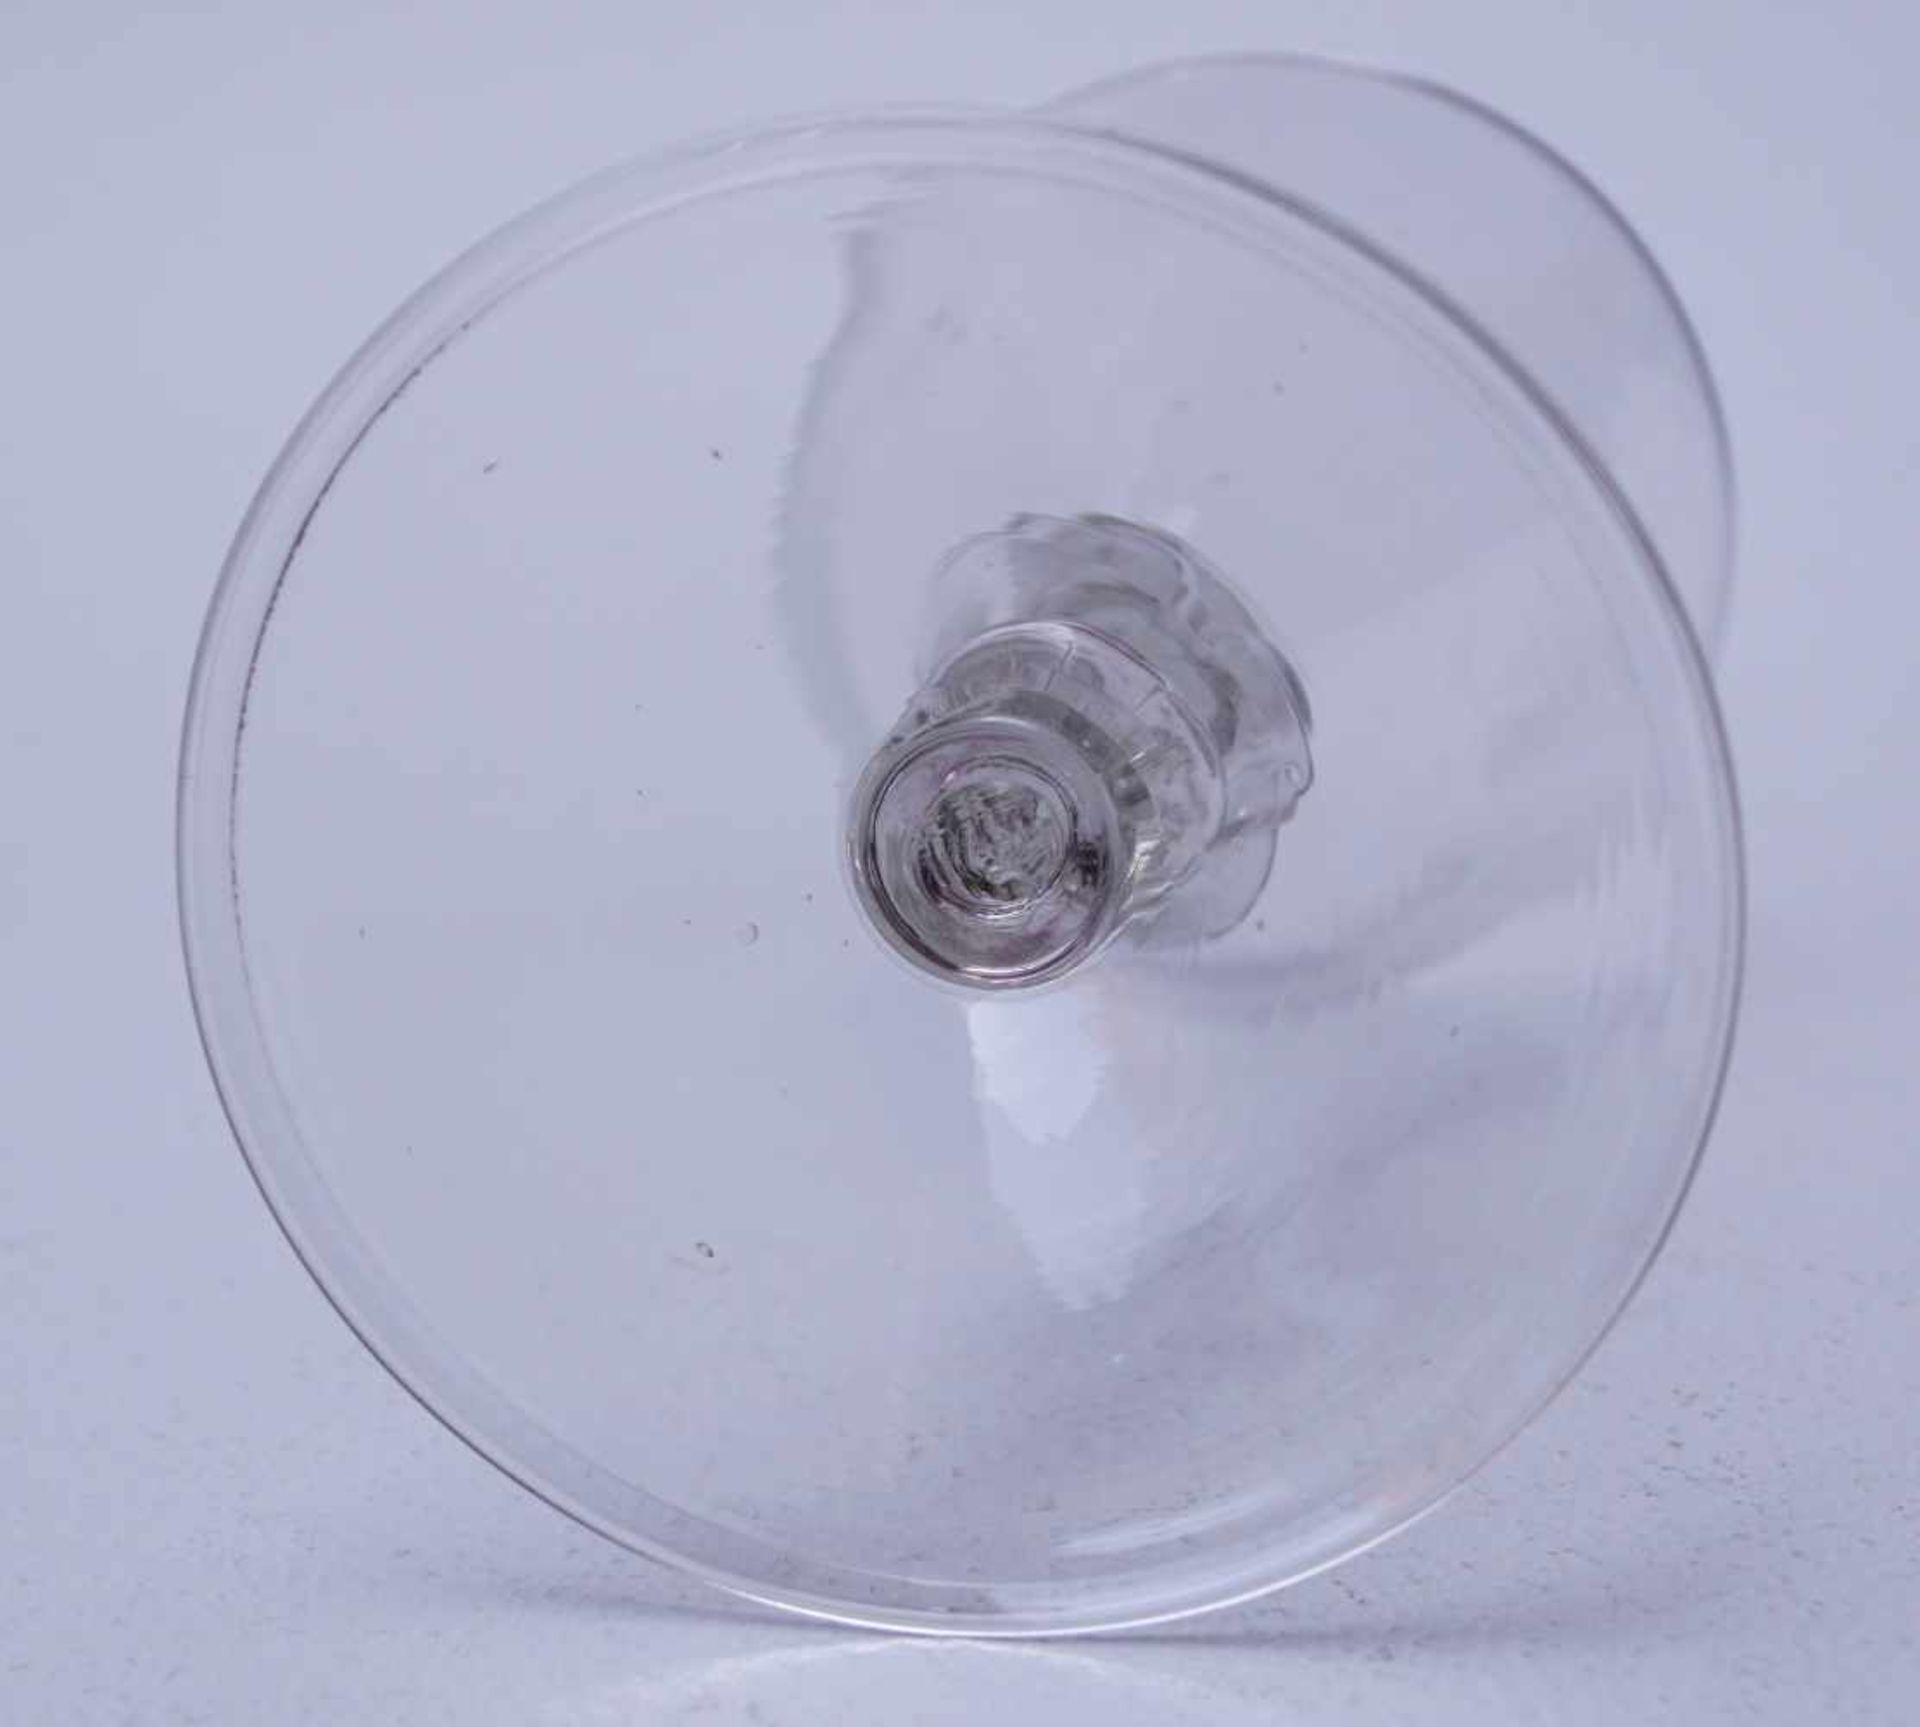 Seltenes Trichterglas des 17. Jhd.Farbloses Glas, geblasen, breiter Fuß mit Standring, Schaft - Bild 3 aus 3